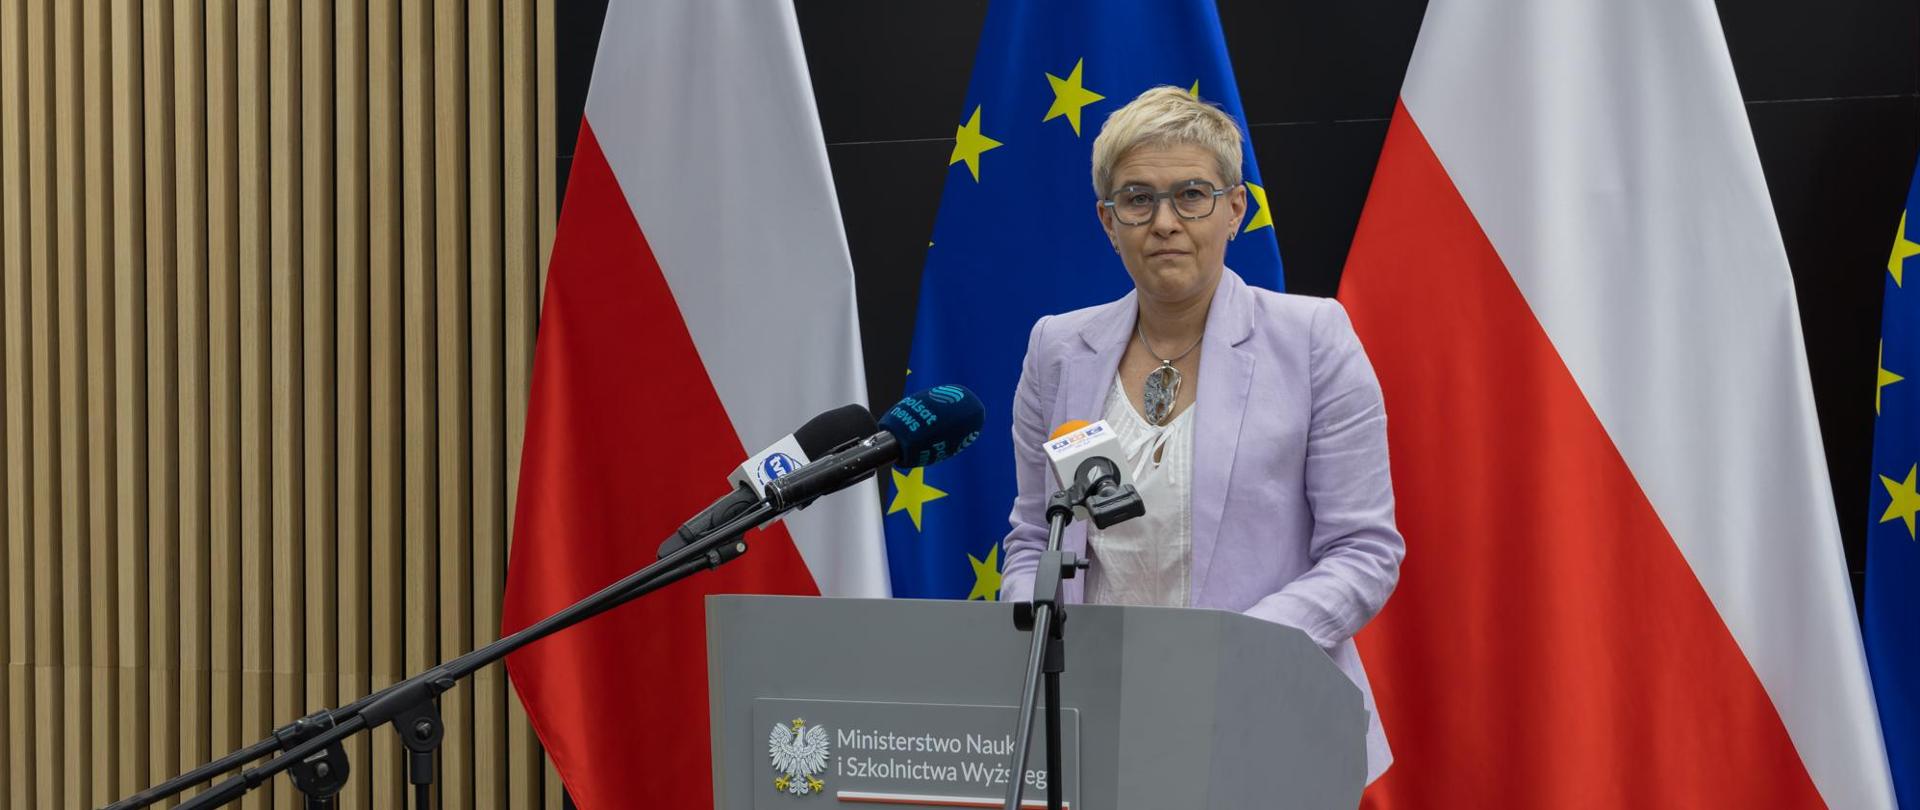 Wiceminister Mrówczyńska stoi za mównicą, za nią pod ścianą flagi Polski i UE.